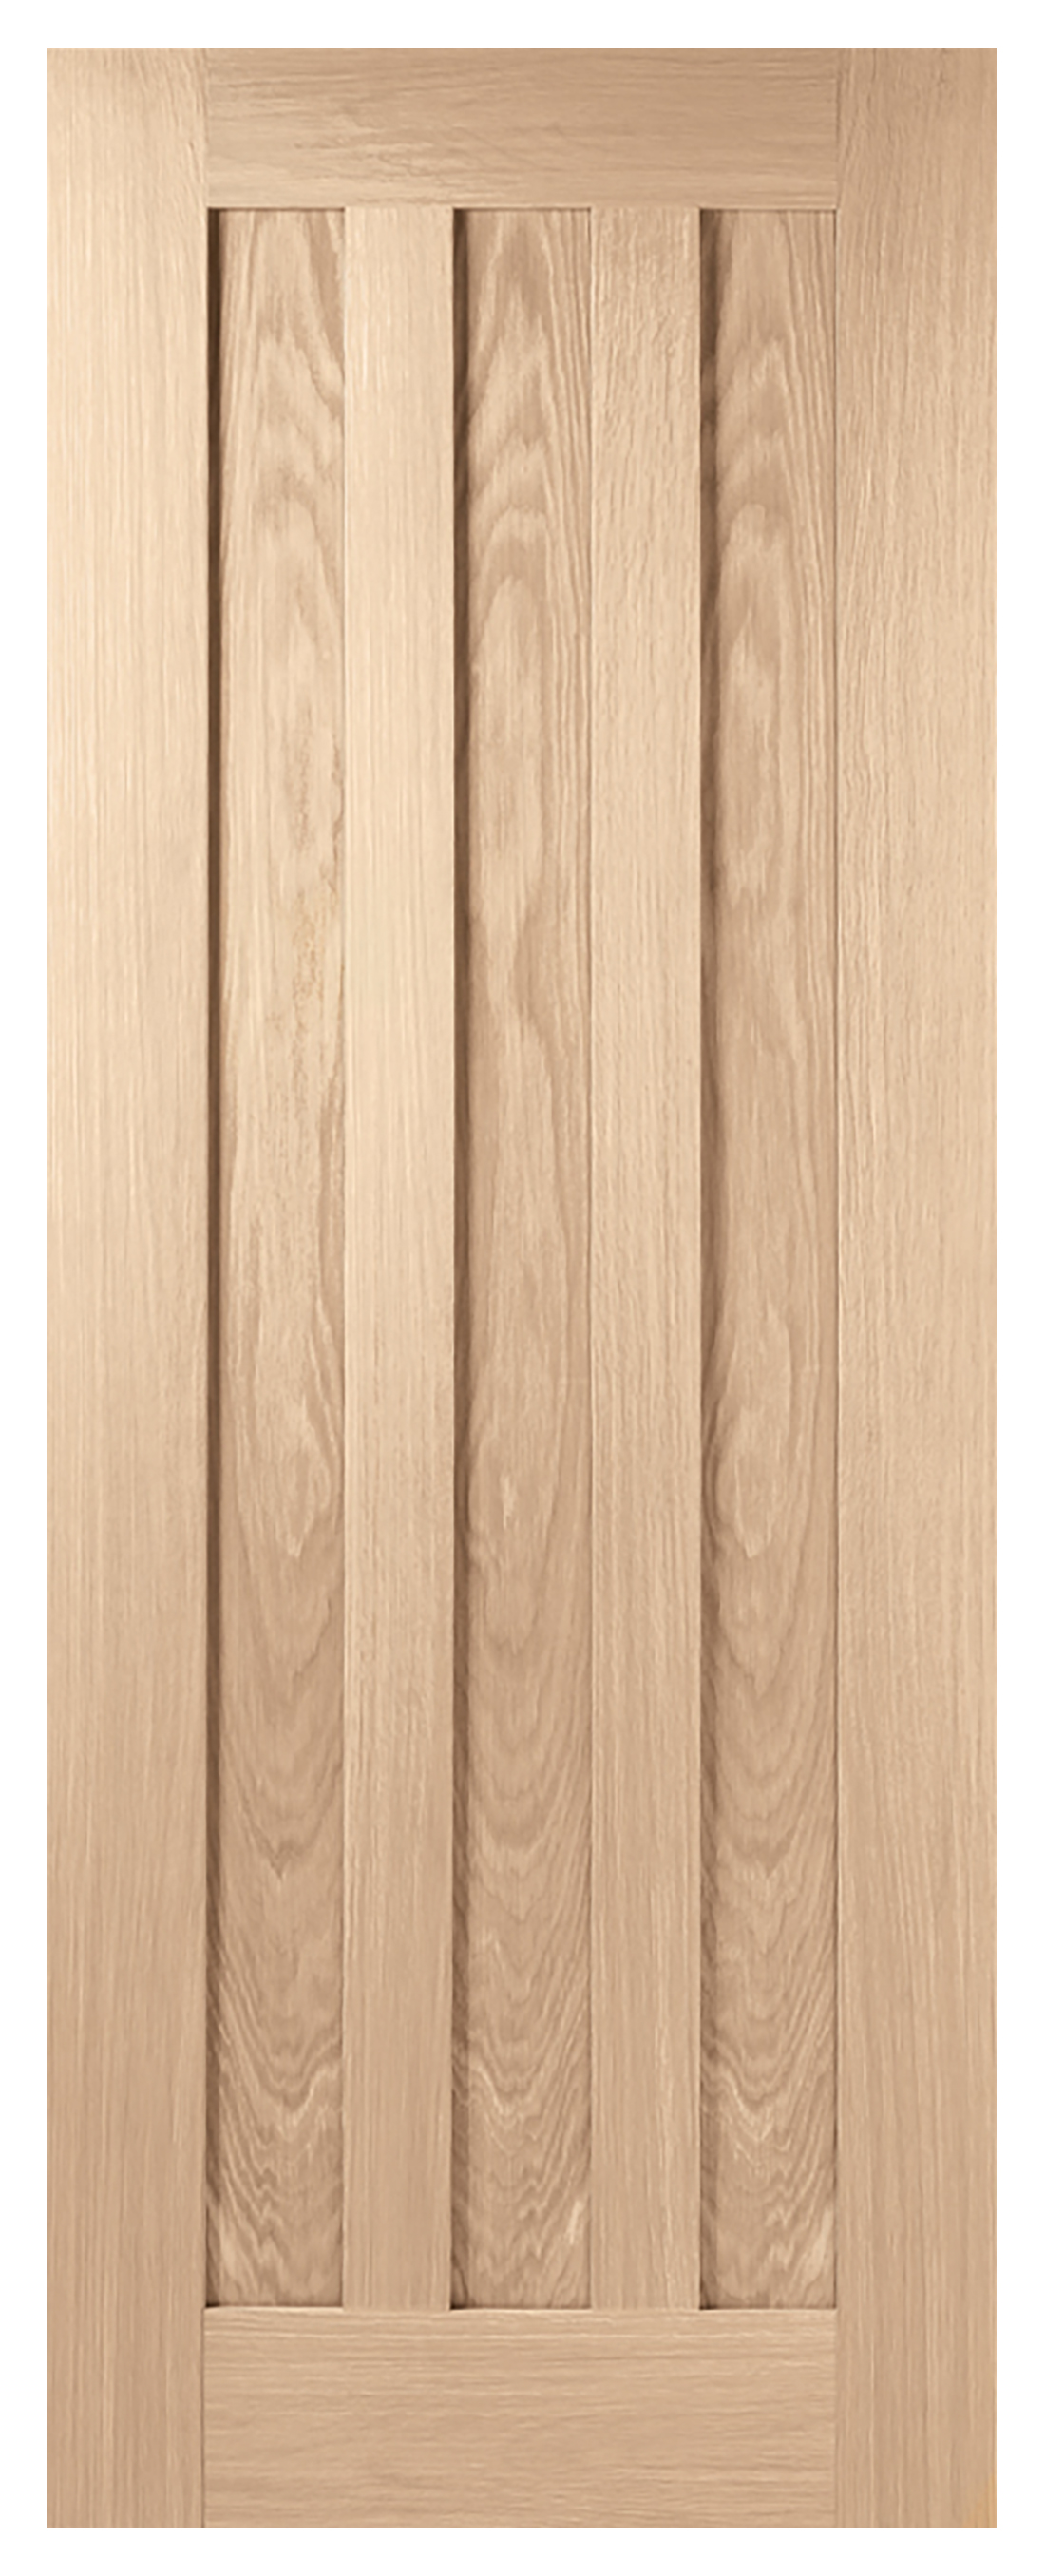 Image of LPD Internal Idaho 3 Panel Pre-Finished Oak FD30 Fire Door - 826 x 2040mm